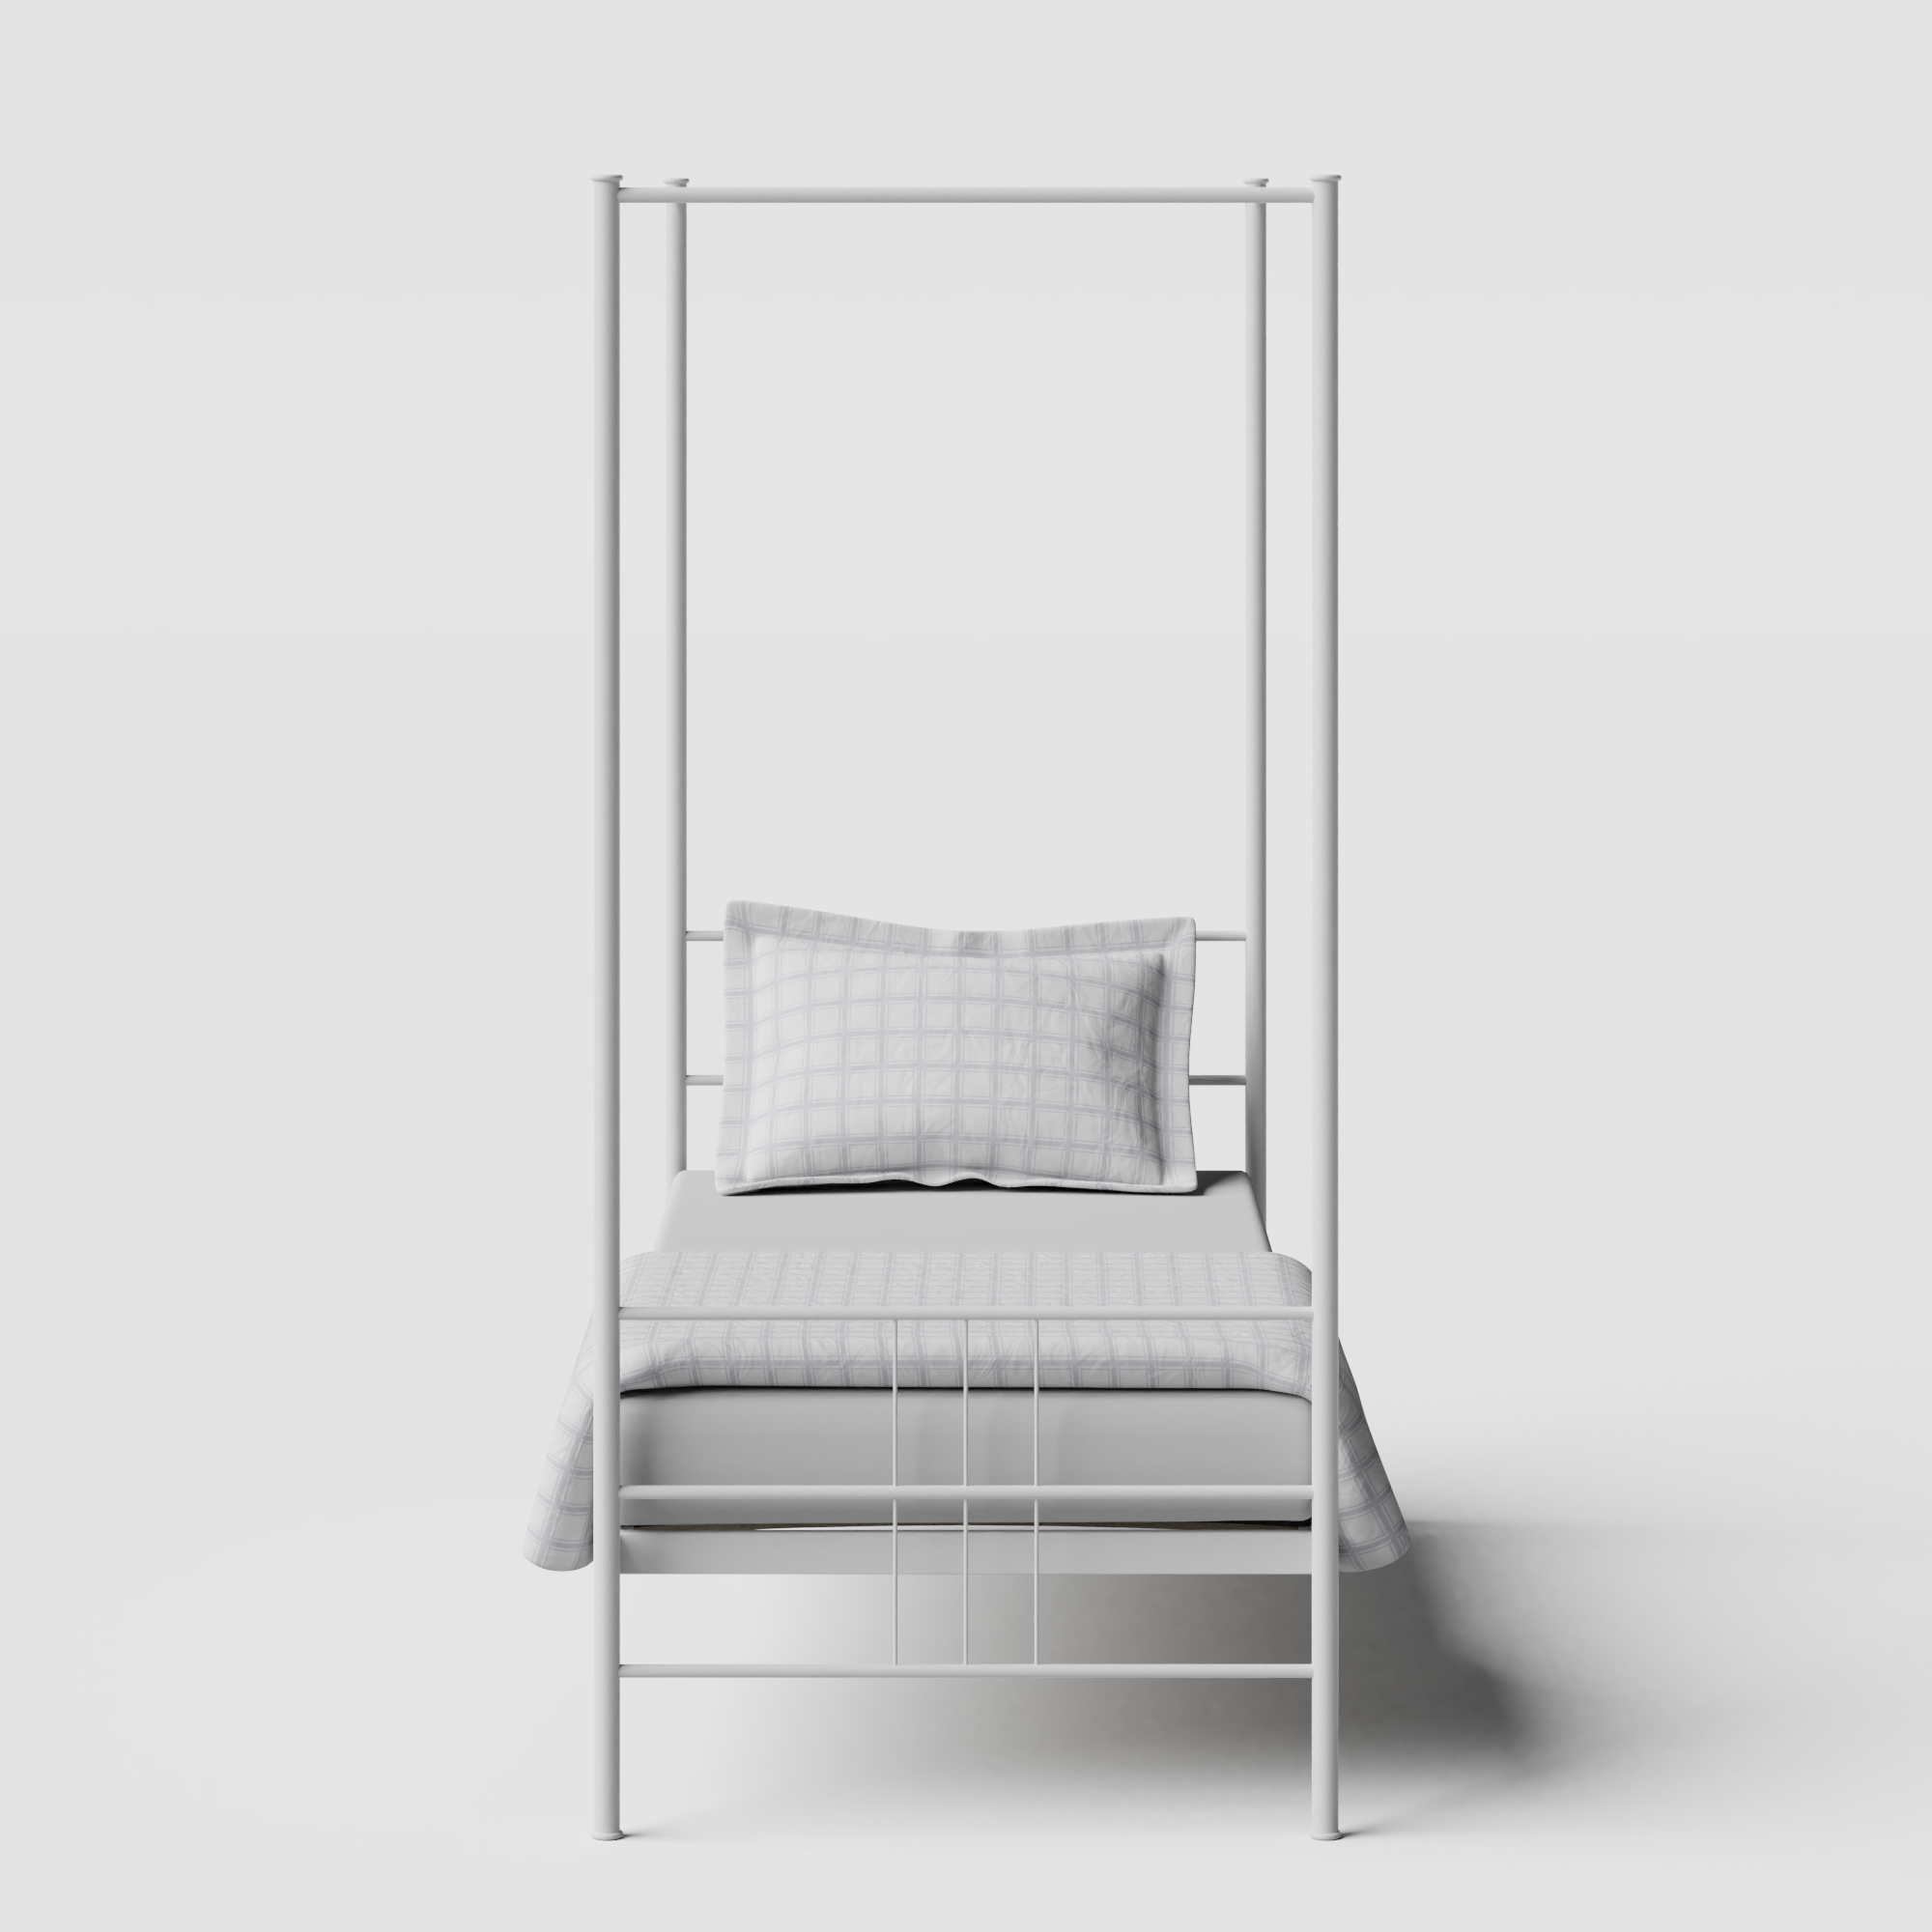 Toulon iron/metal single bed in white